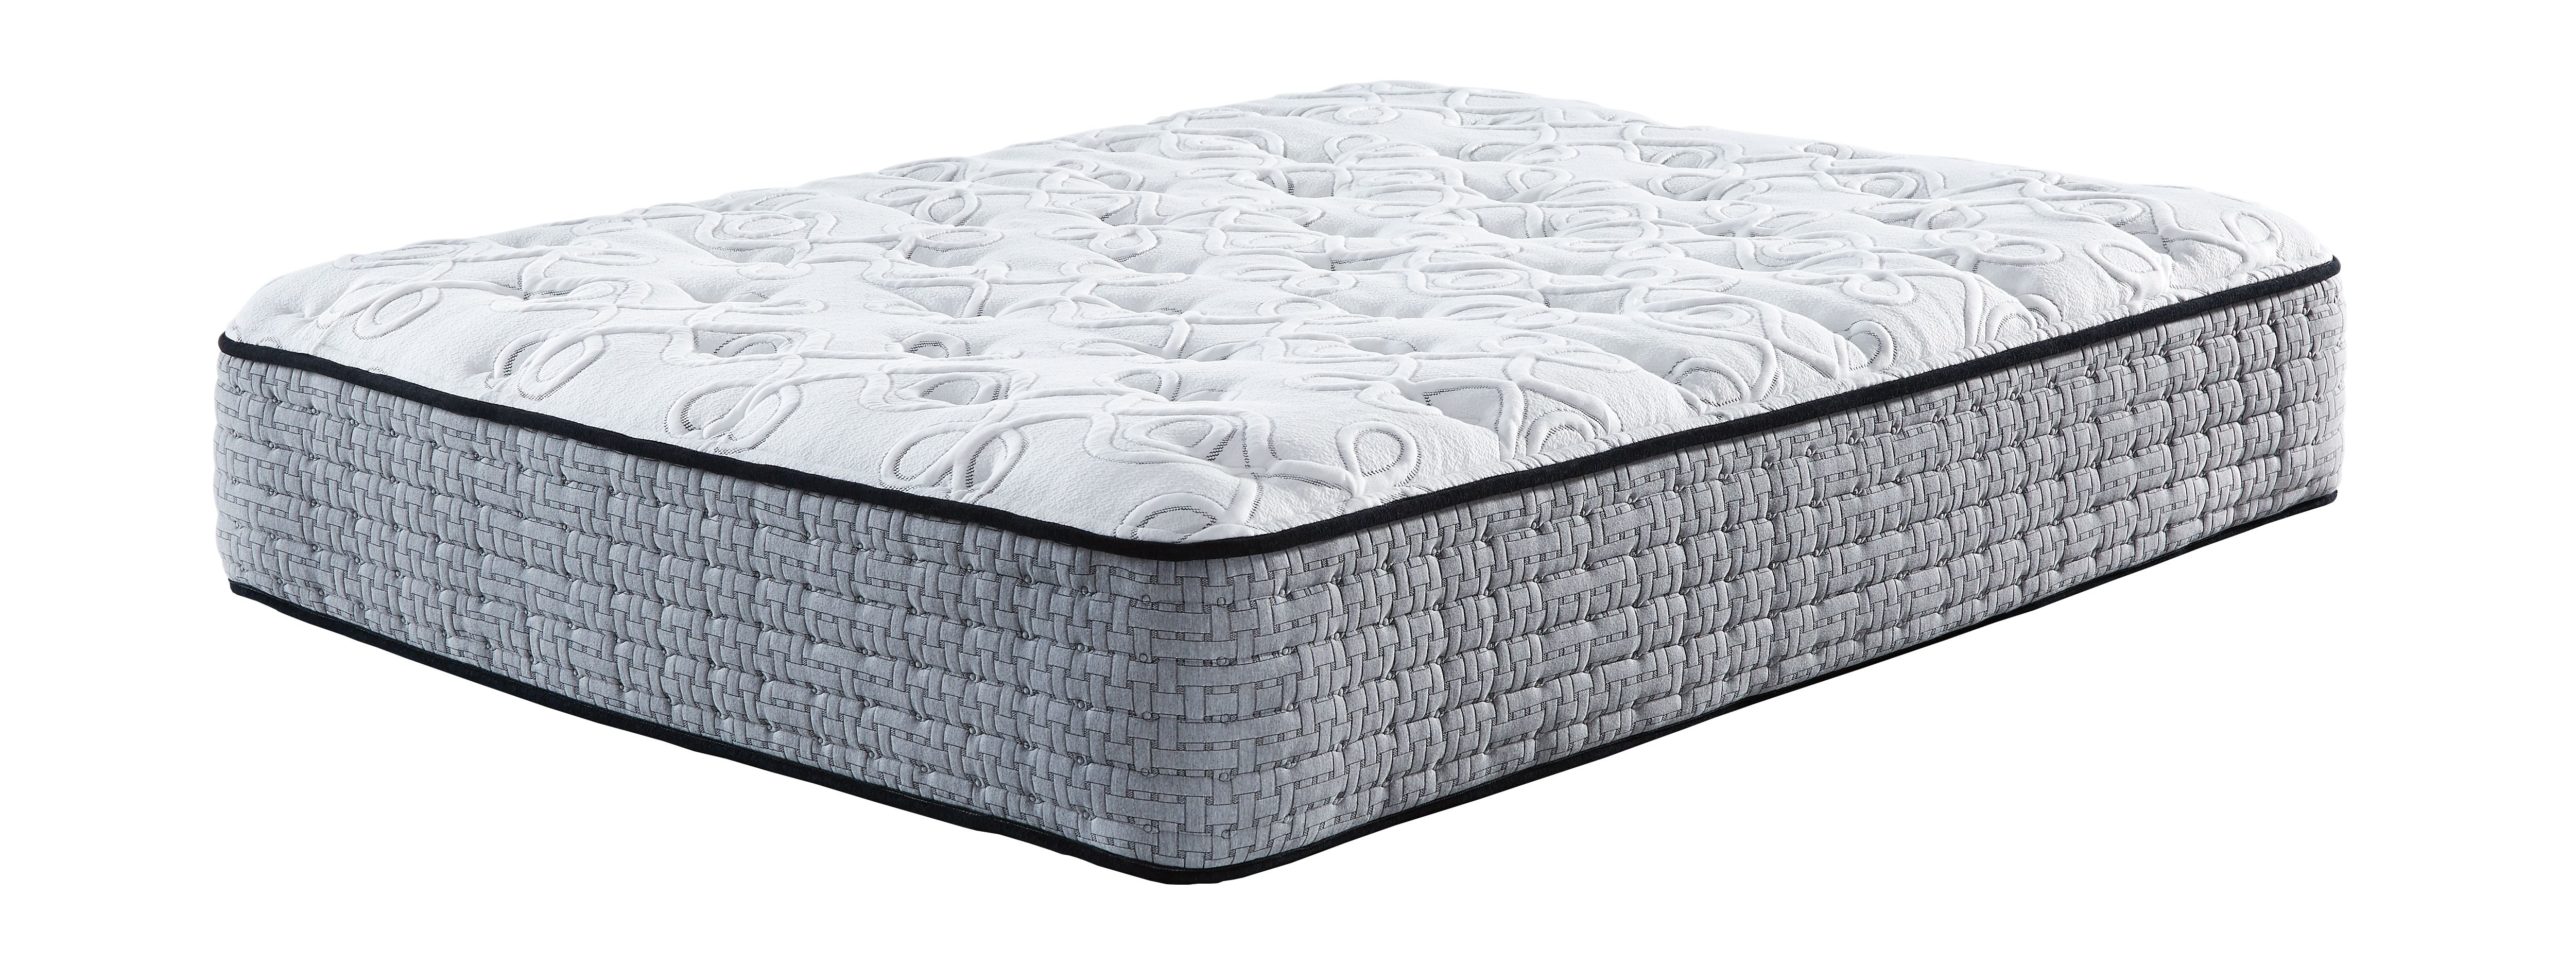 mt rogers pillow top mattress queen